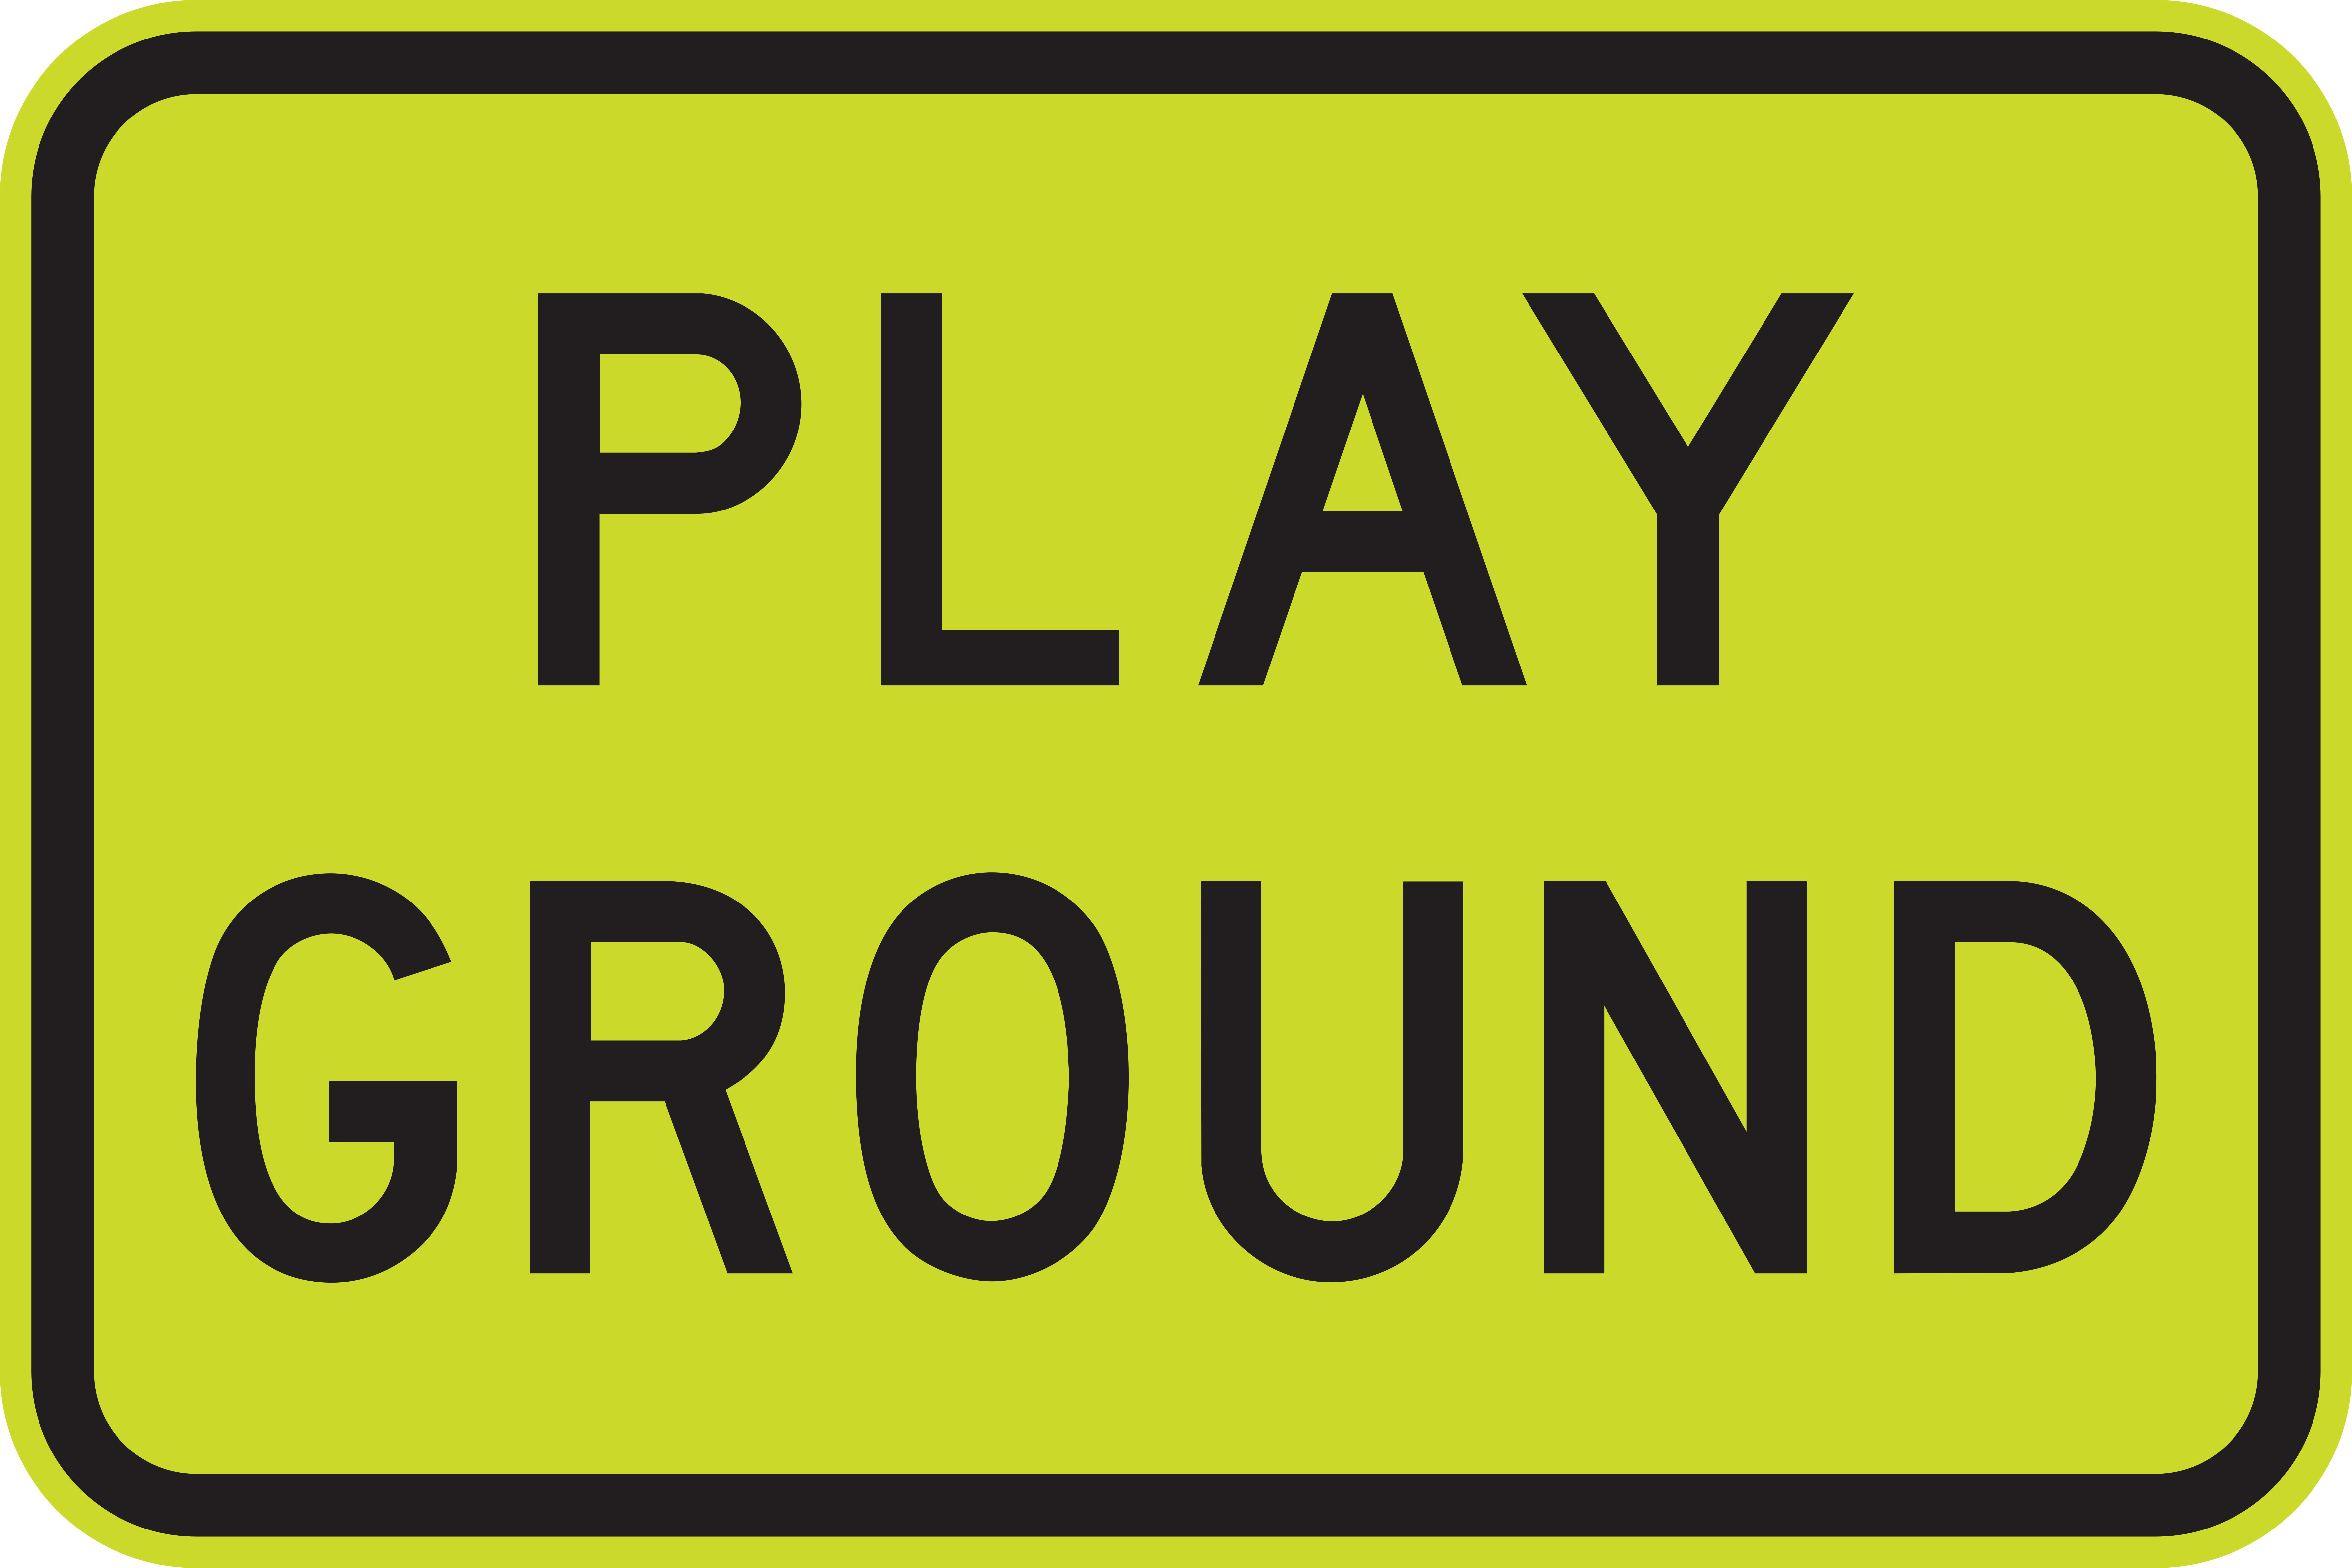 Regulatory School Signs - Play Ground